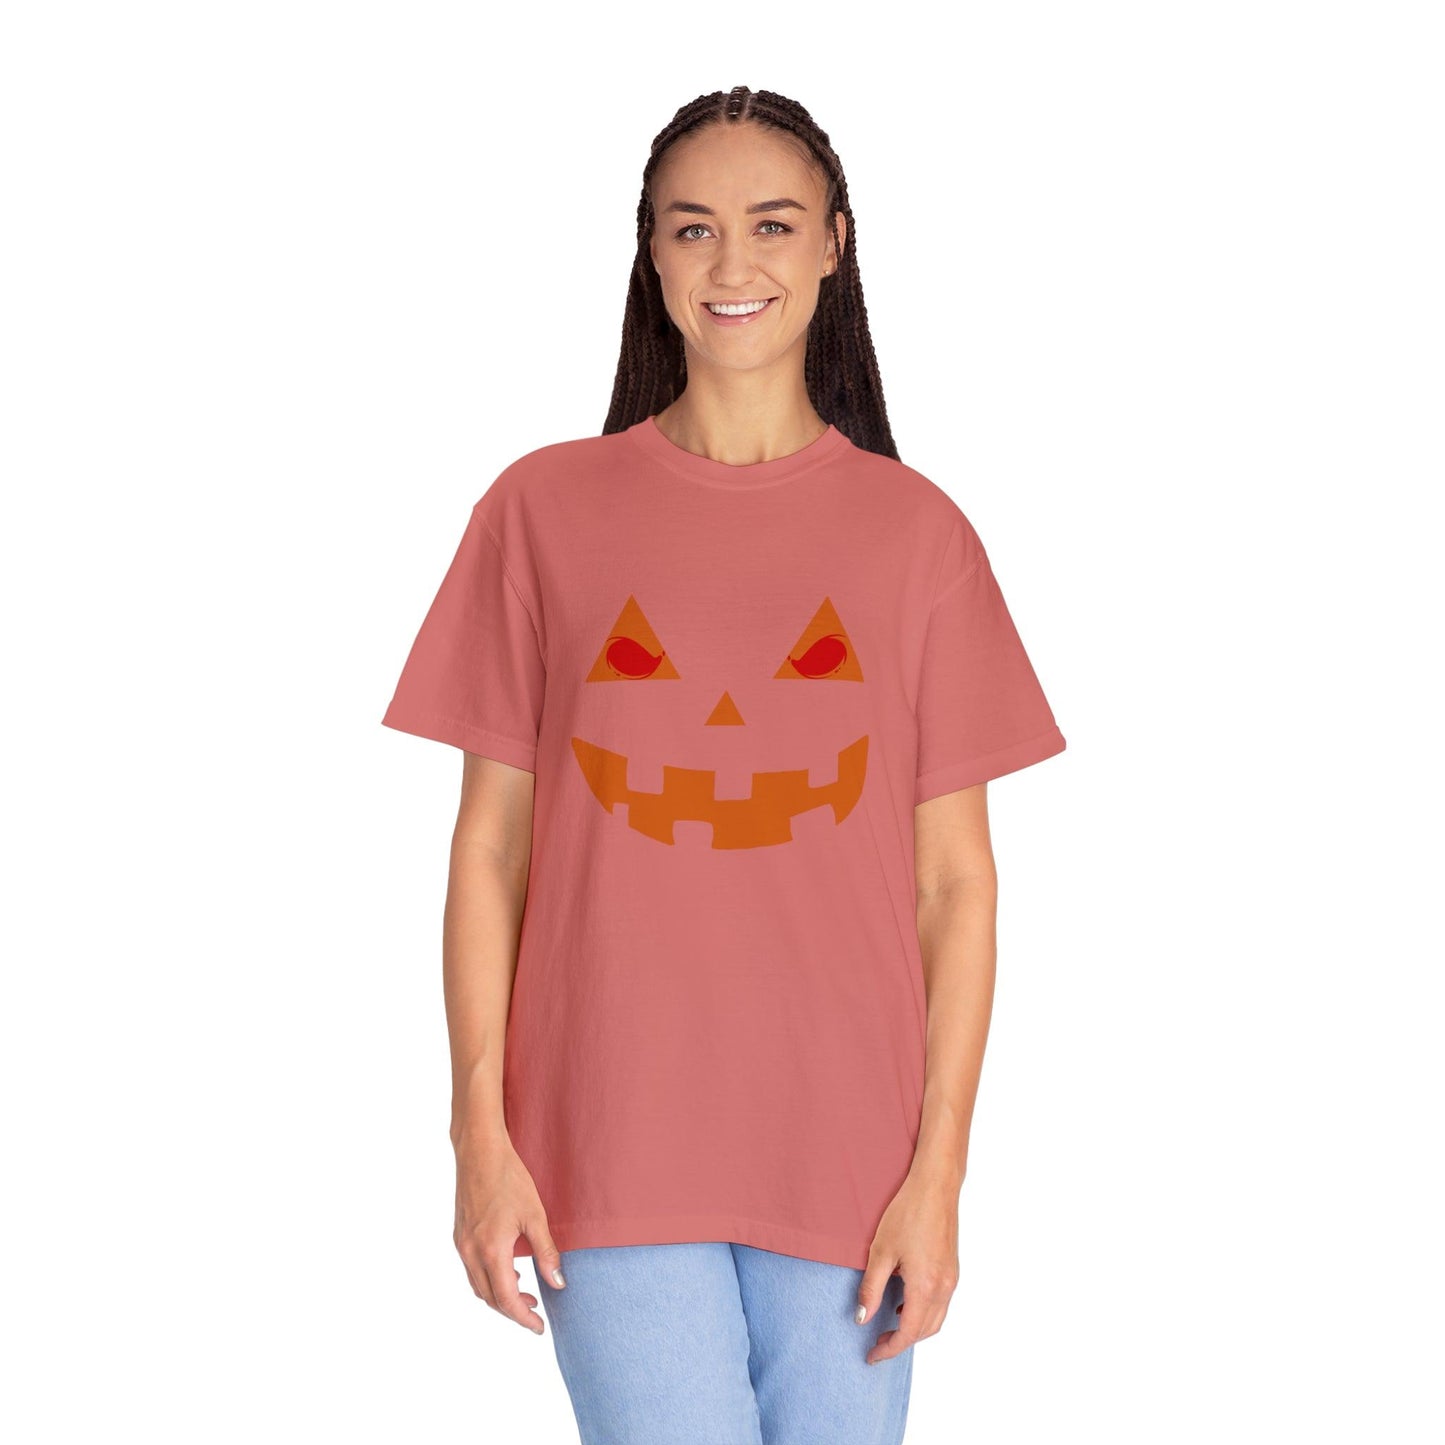 Cute Halloween Pumpkin Faces Scary Faces, Pumpkin Silhouette, Vintage Shirt Halloween Shirt Pumpkin Face Halloween Costume Comfort Colors